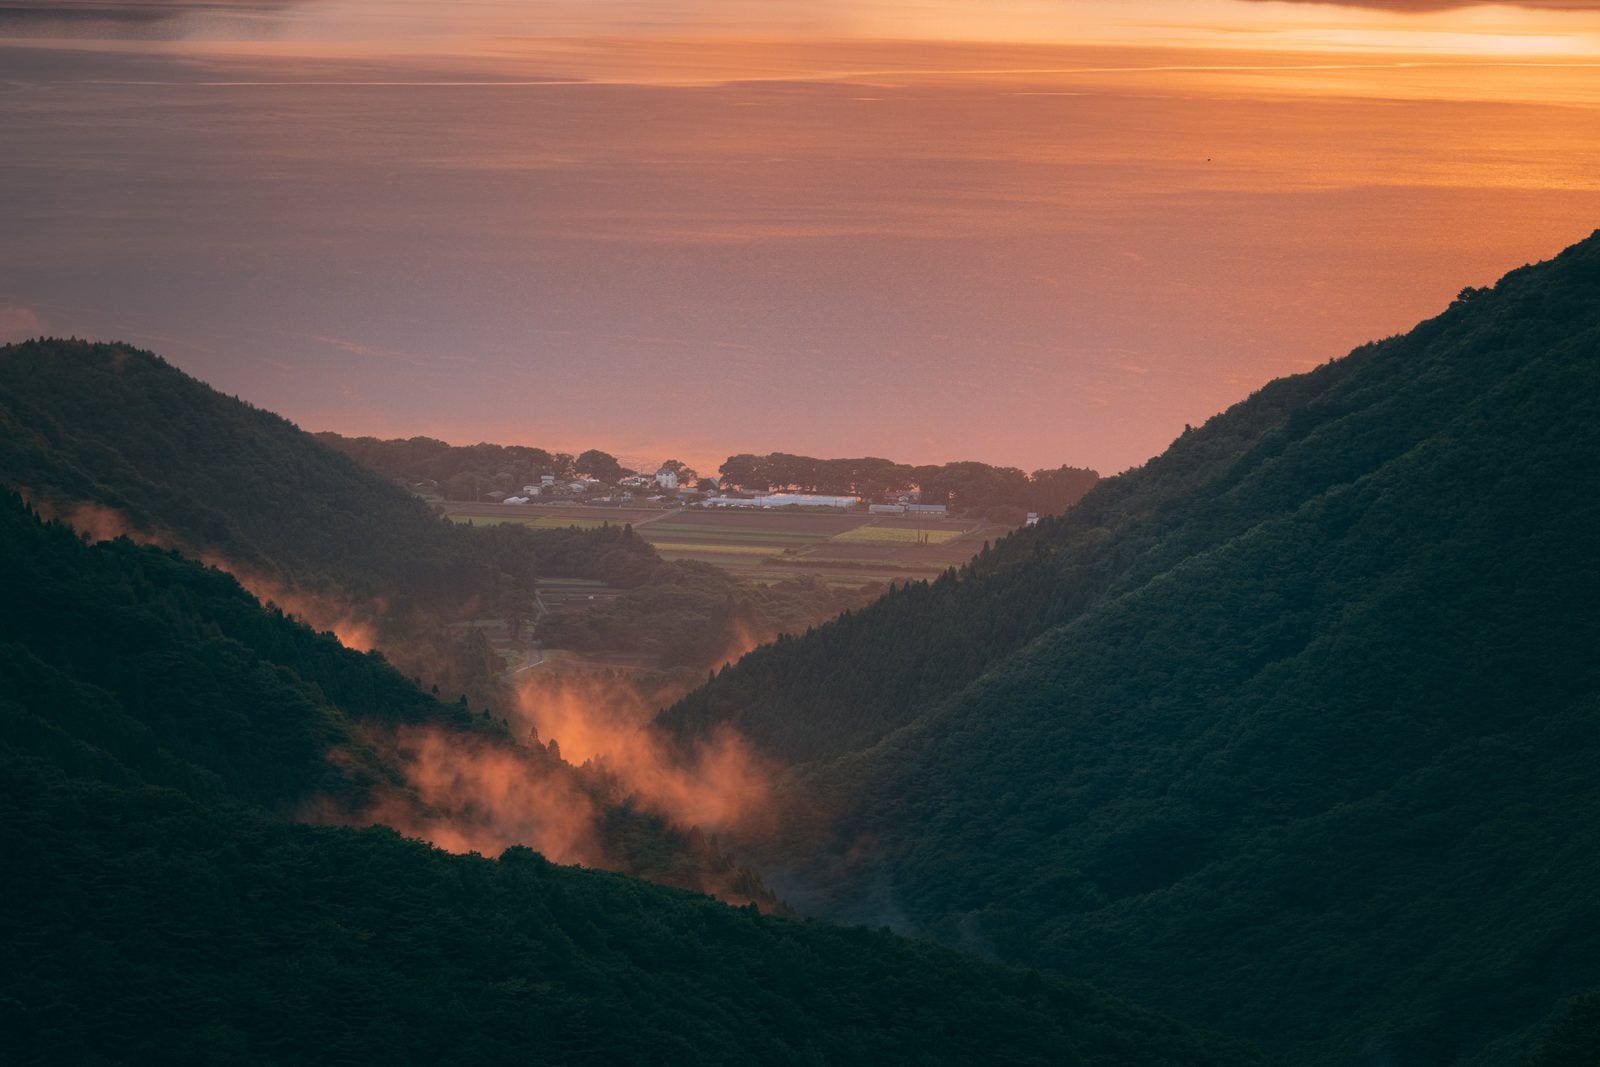 「夕焼けの御霊櫃峠から眺める猪苗代湖方面」の写真